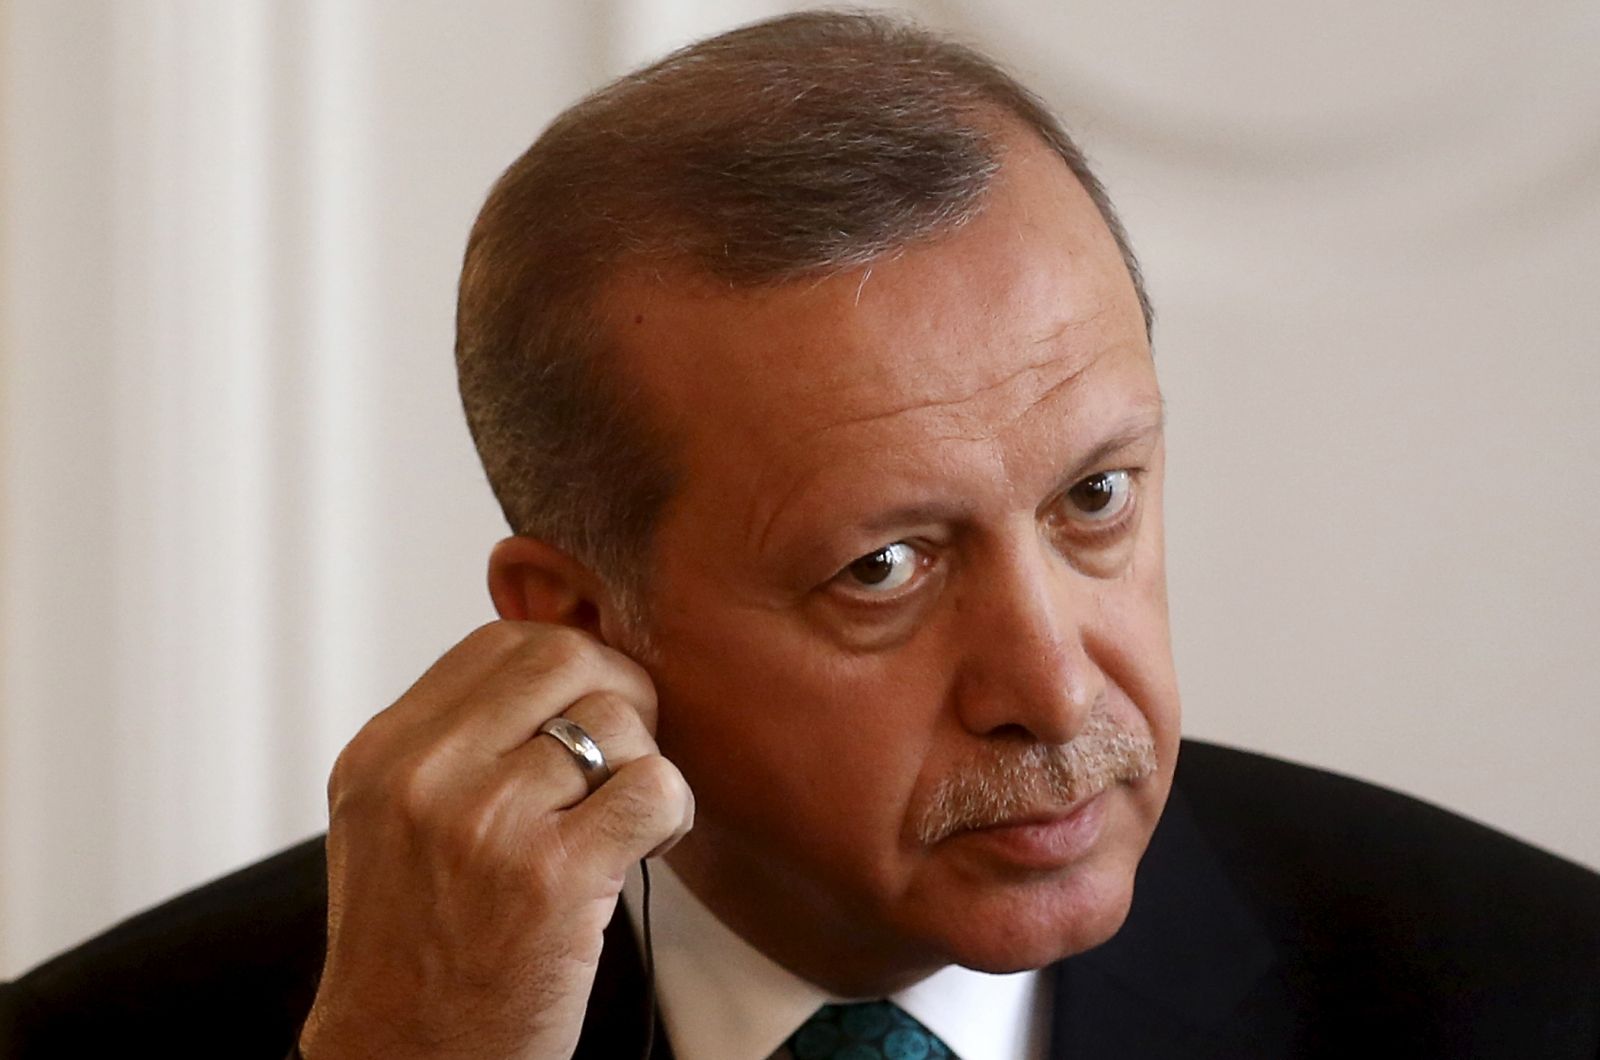 Turkey's Erdogan threatens press